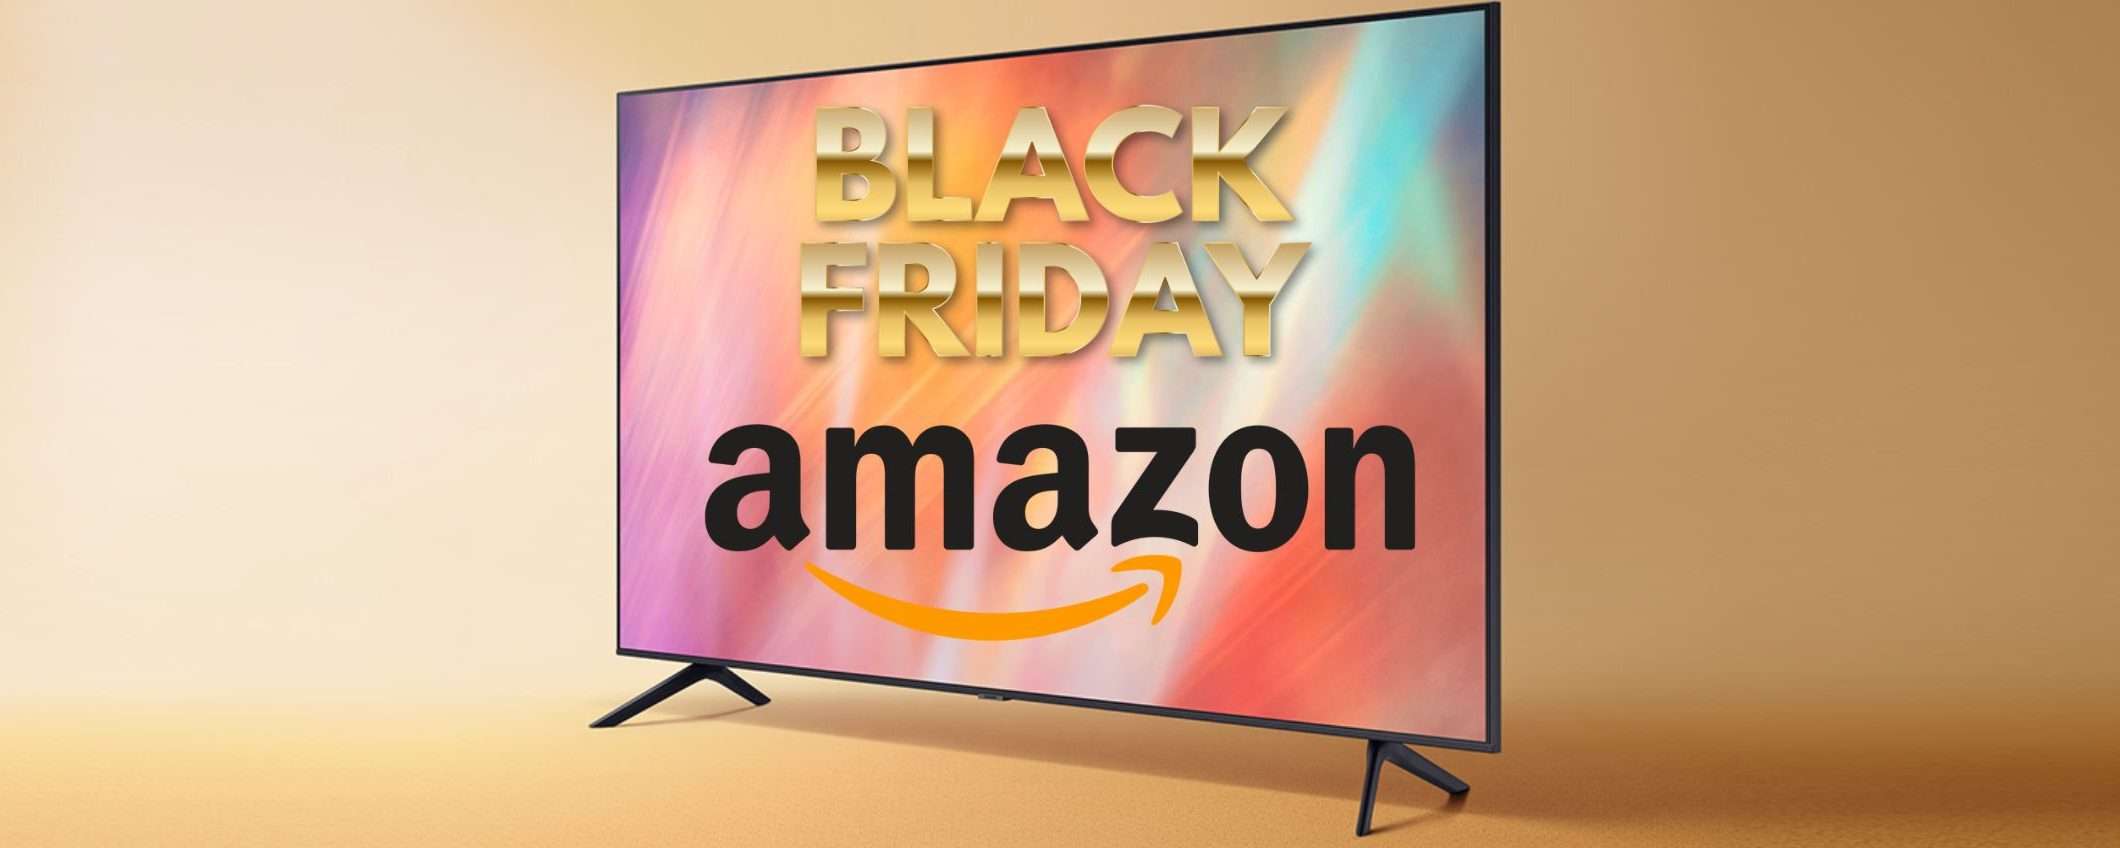 Black Friday Amazon: le migliori Smart TV in offerta